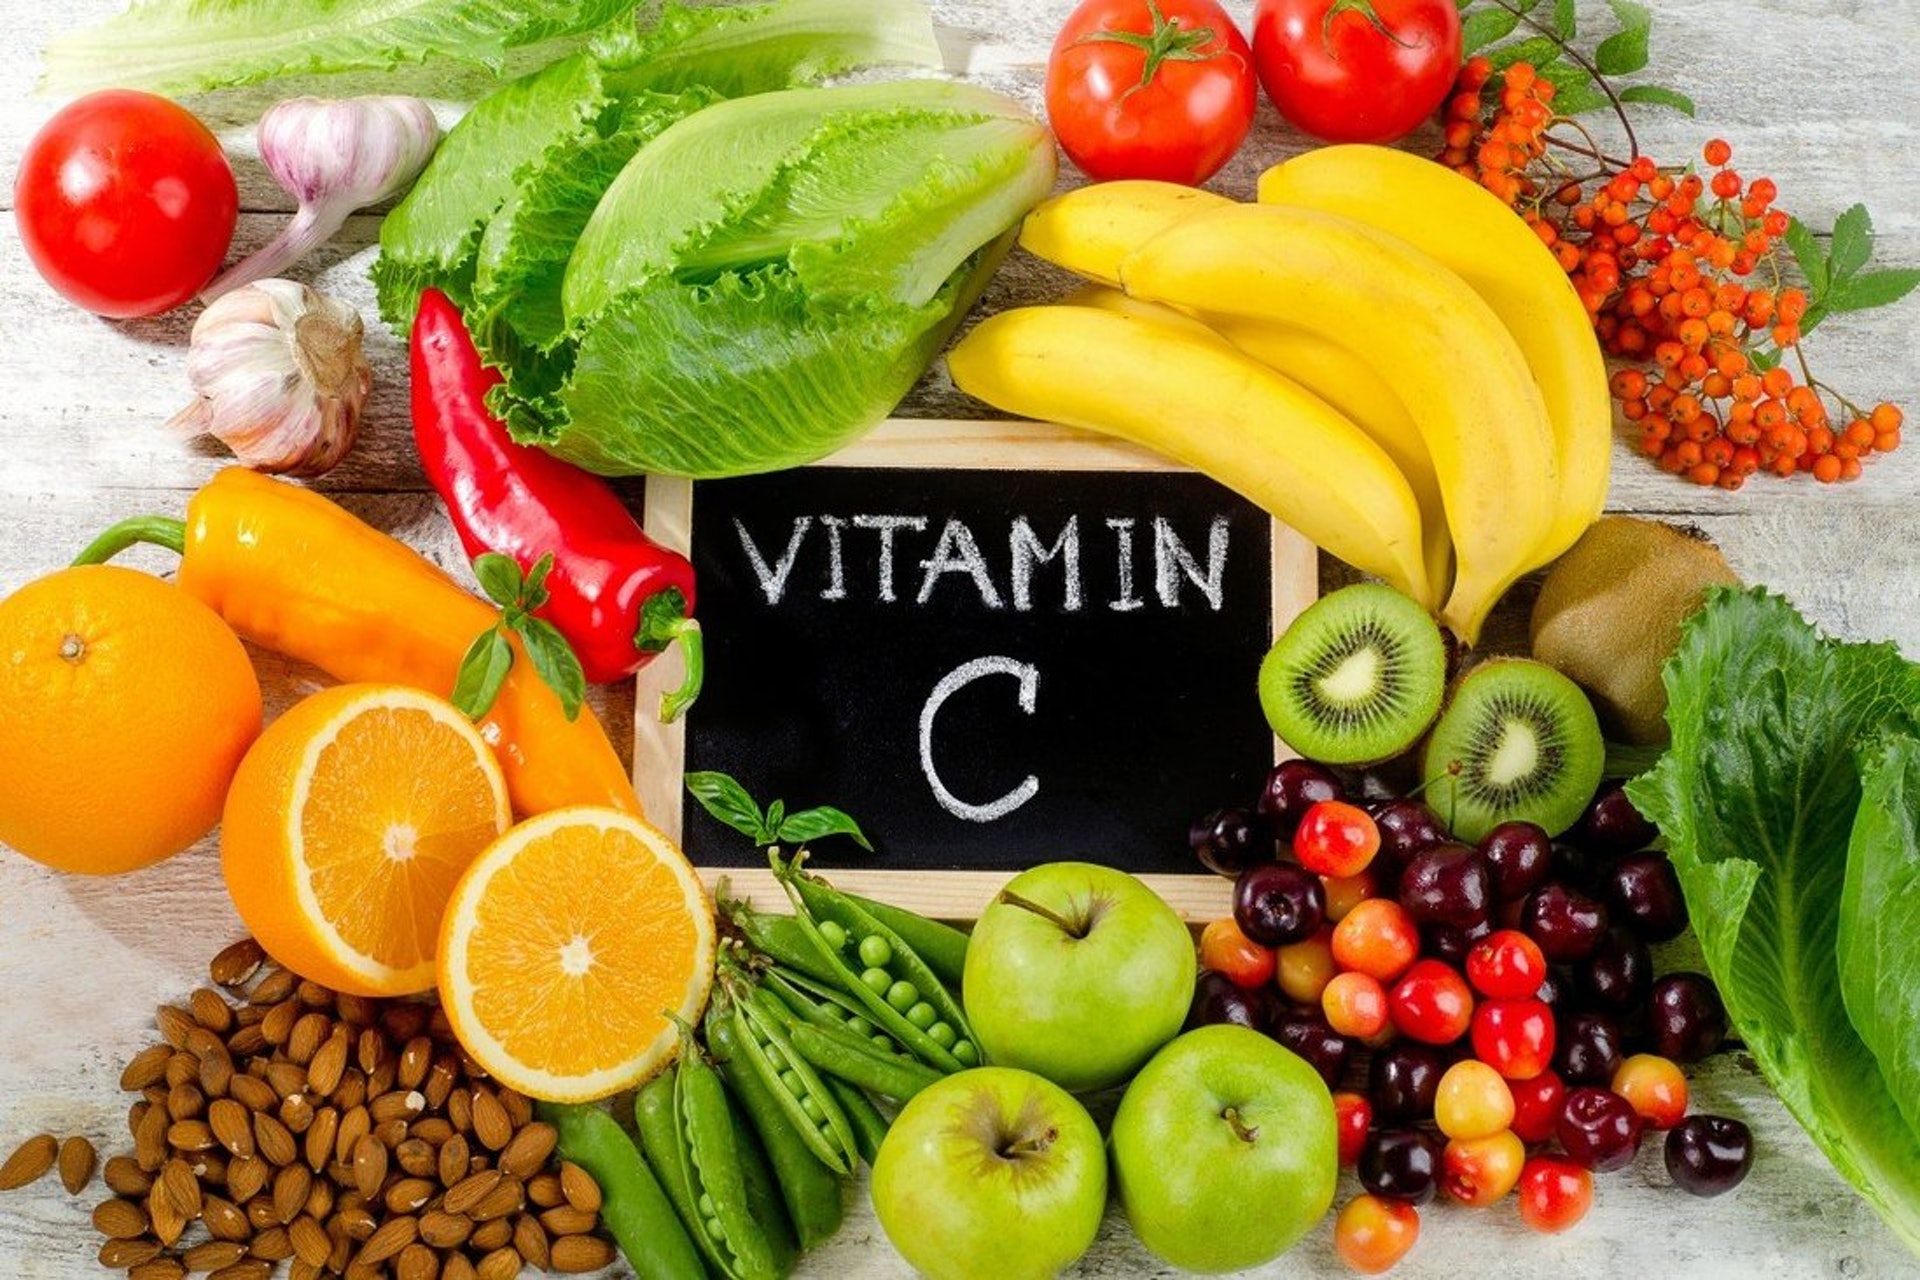 建議打斑後可以多補充維他命C，如進食富含維他命C的果蔬及營養補充品 (圖片: SCMP)